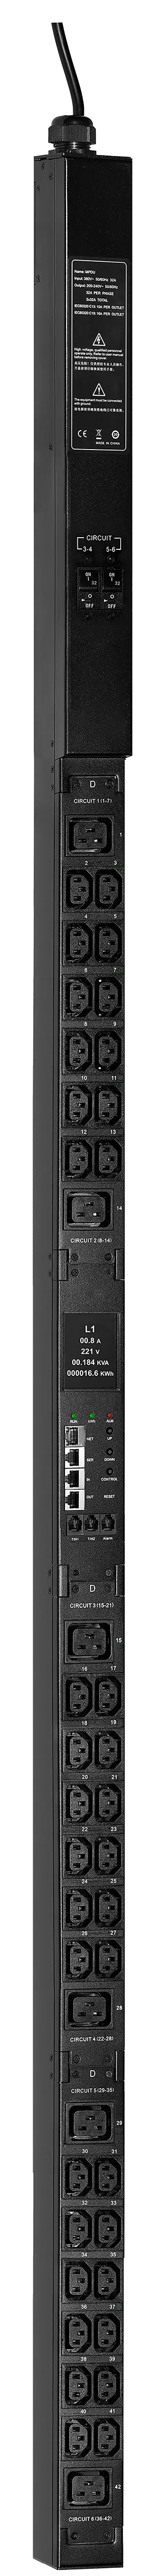 ITK ADMIN PDU с мониторингом PV1213 3Ф 32А 36С13 6С19 кабель 3м IEC60309